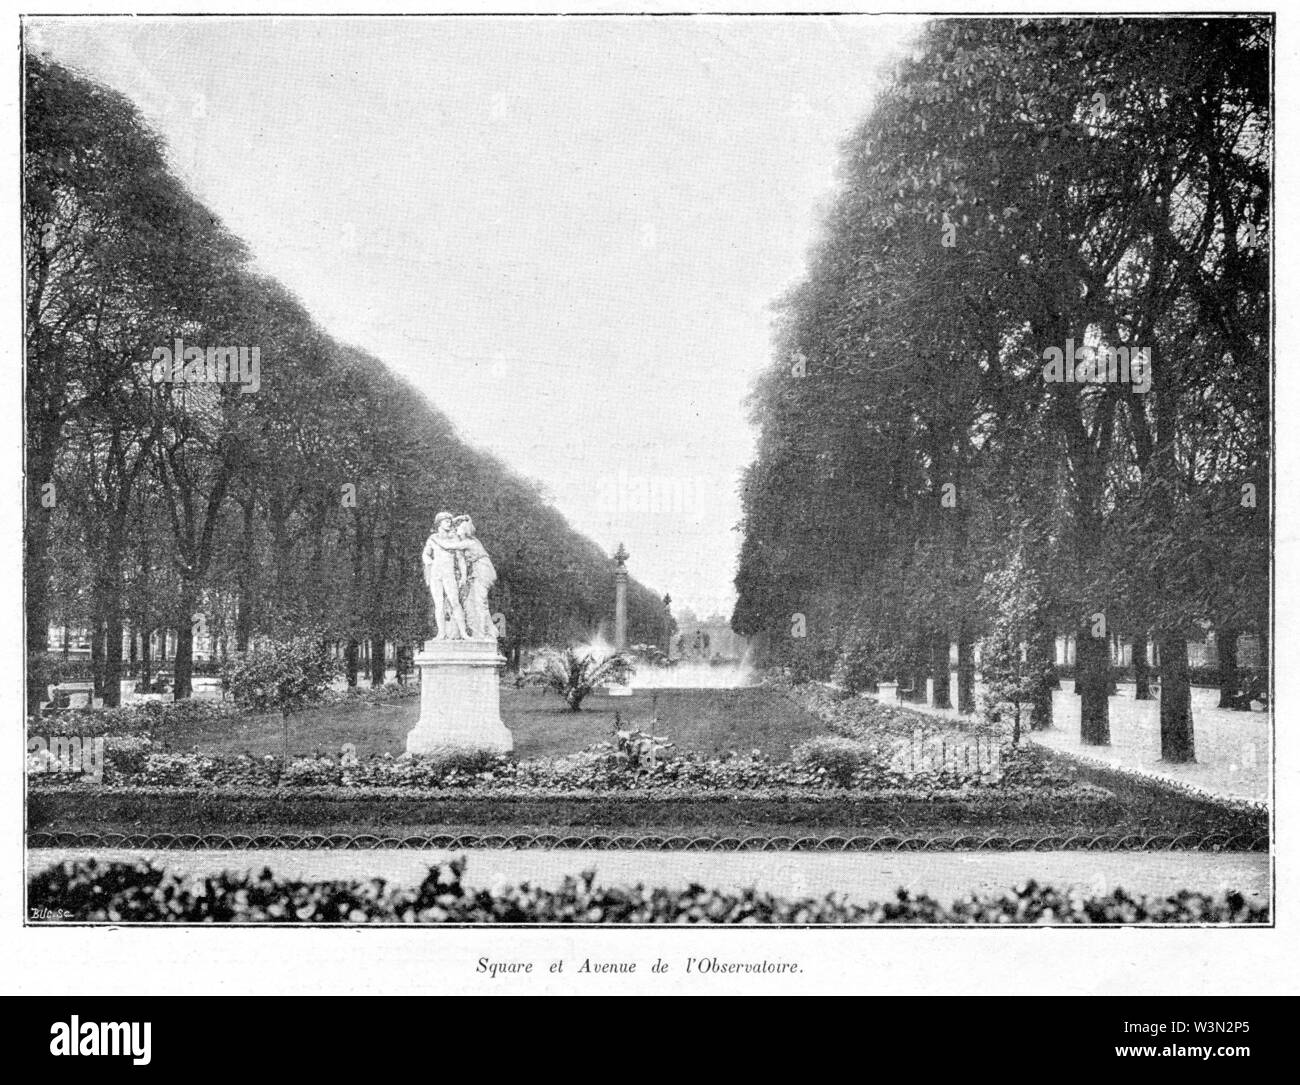 Clément Maurice Paris en plein air, BUC, 1897,045 Square et Avenue de l'Observatoire. Stock Photo